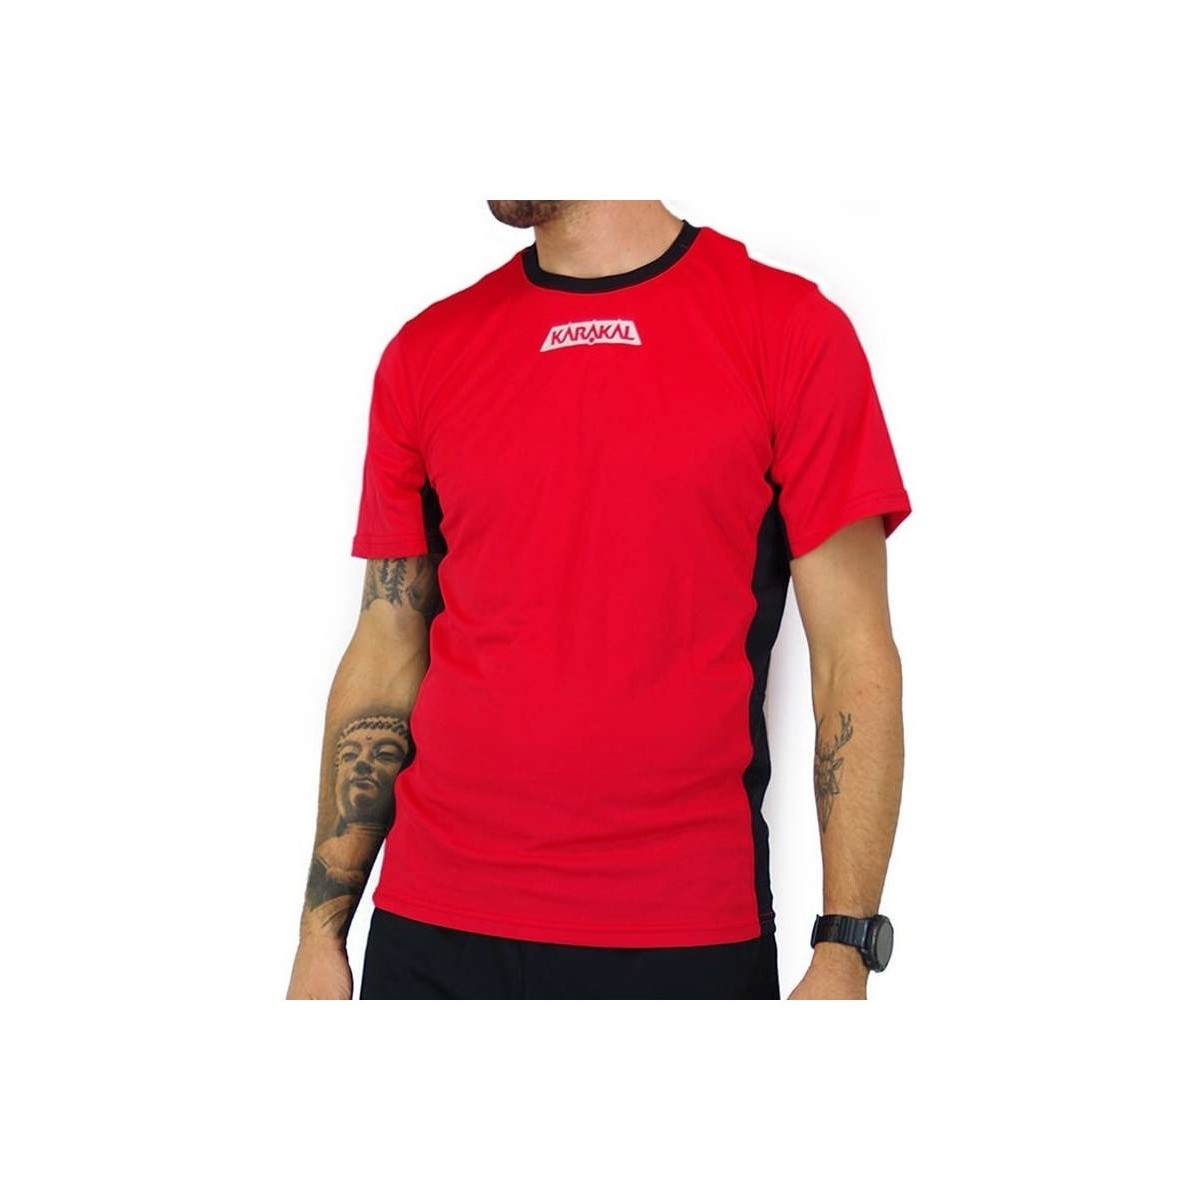 Textil Muži Trička s krátkým rukávem Karakal Pro Tour Tee Červená